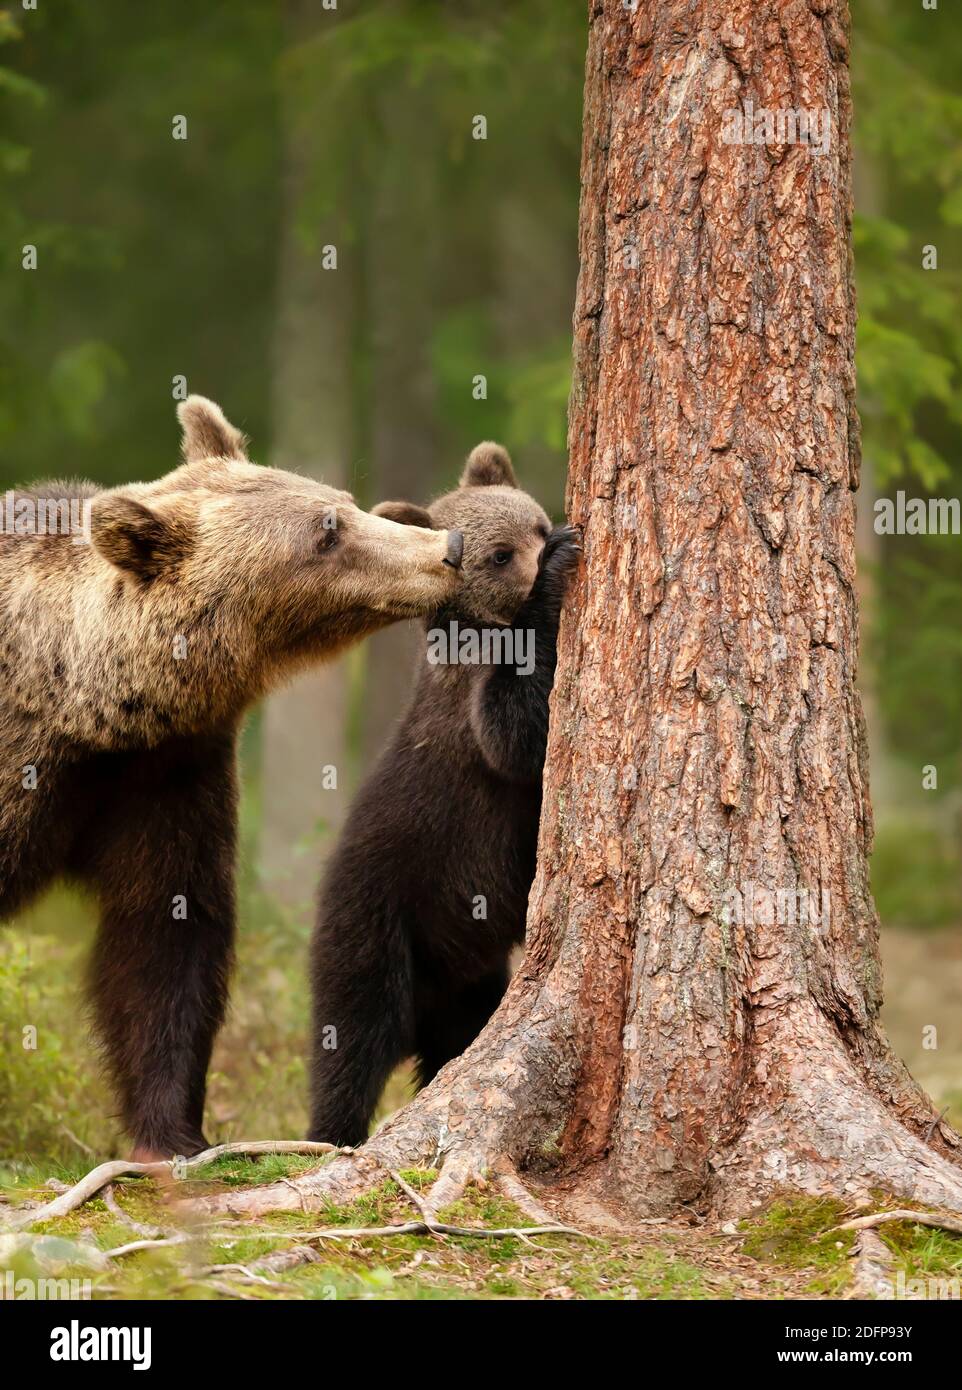 Nahaufnahme eines eurasischen Braunbären (Ursos arctos), der ihr verspieltes Junge beim Versuch zusieht, einen Baum zu besteigen, Finnland. Stockfoto